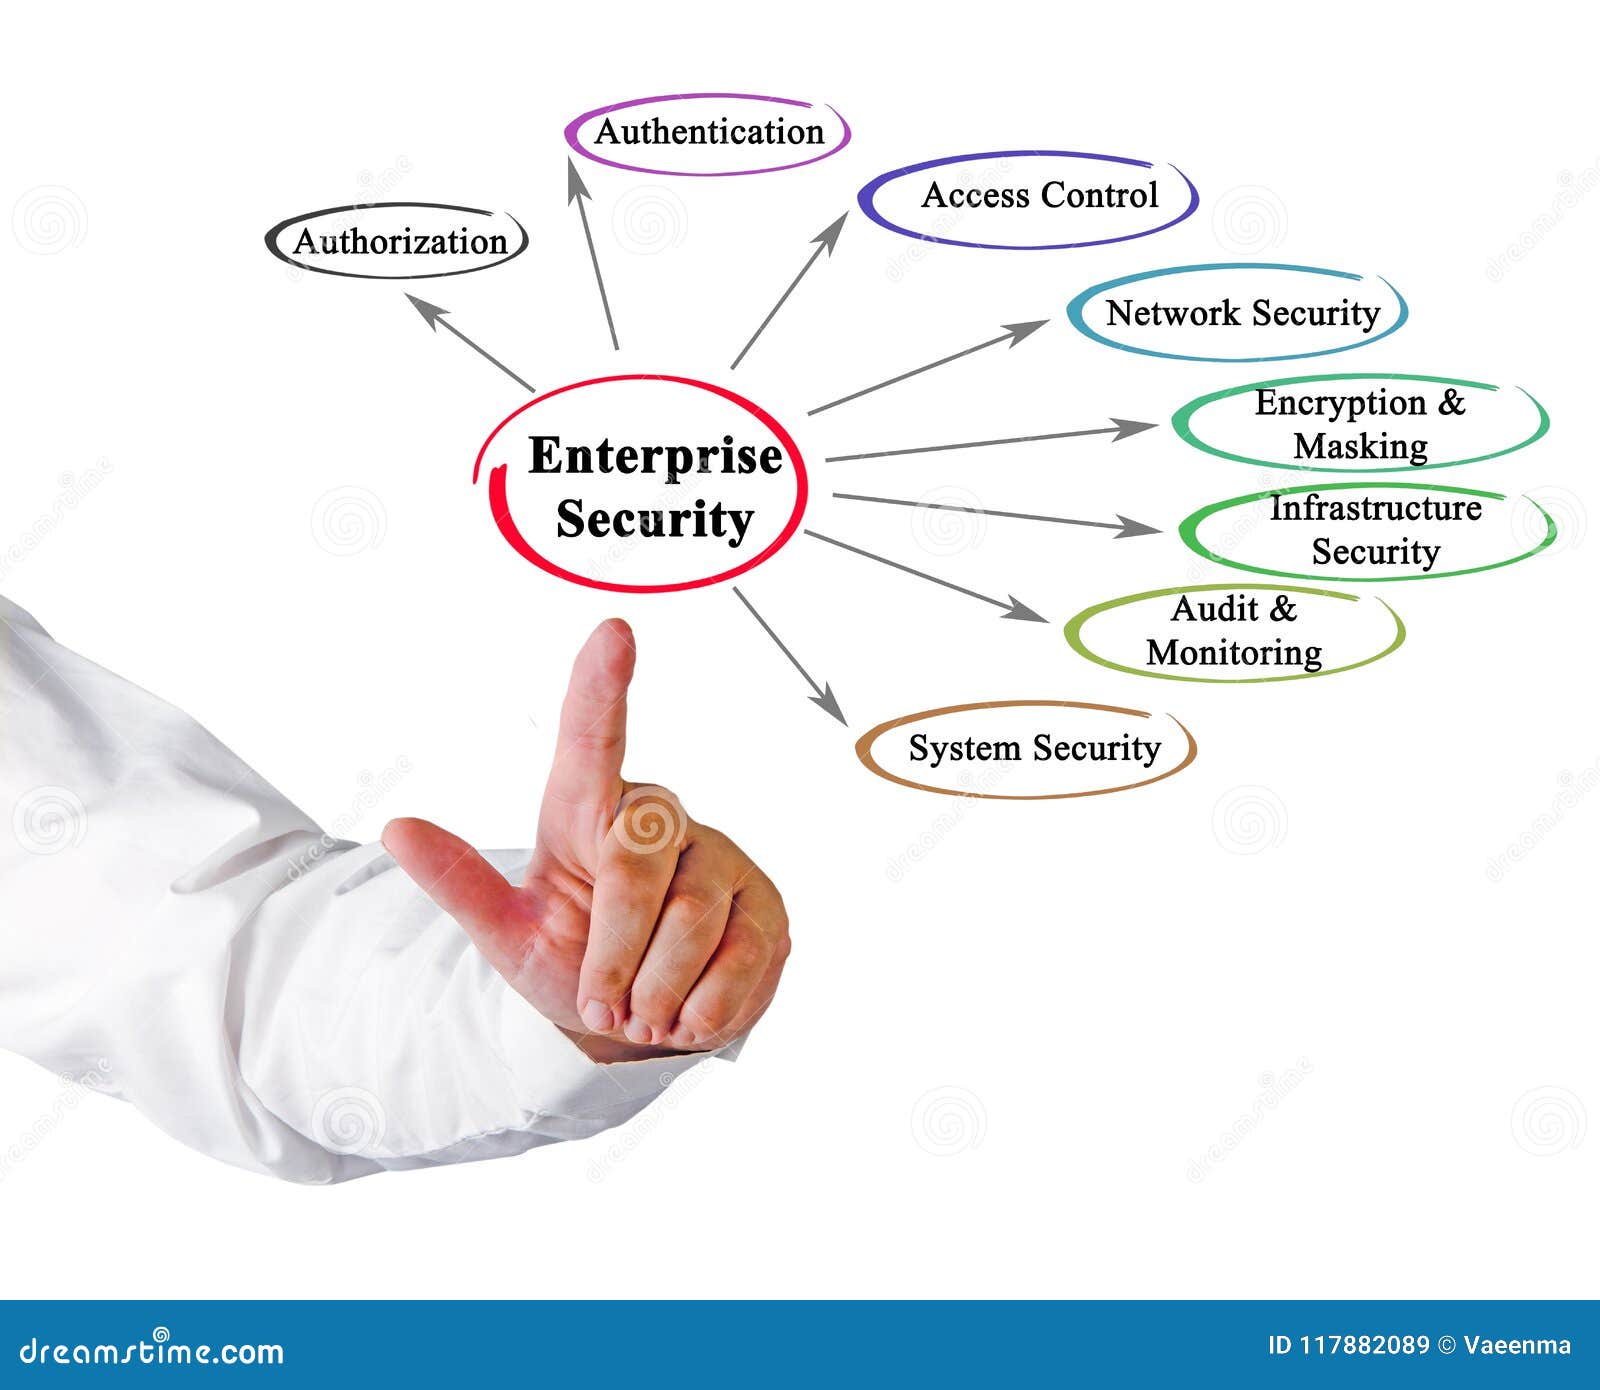 enterprise security aspects